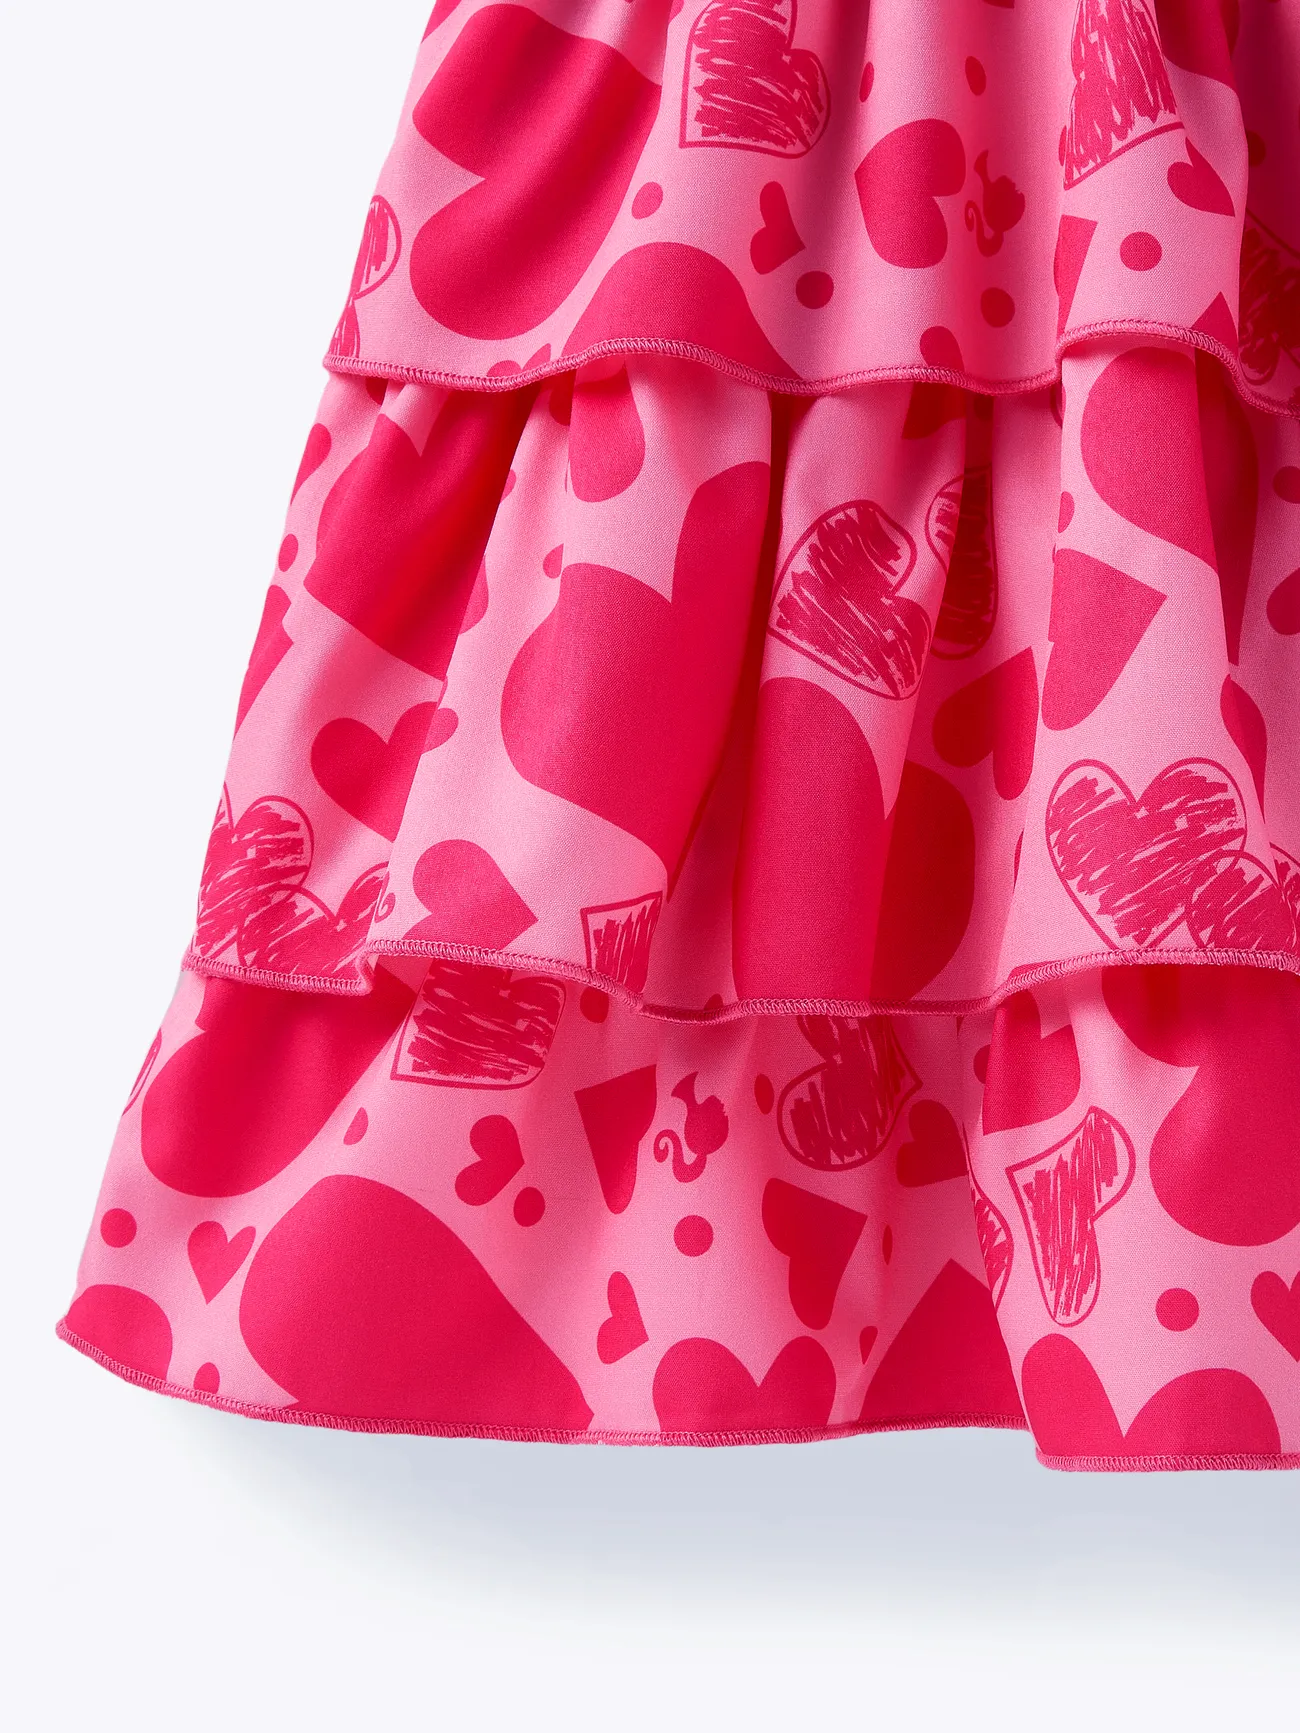 Barbie Fête des Mères IP Fille Couture de tissus Enfantin Robes rose big image 1